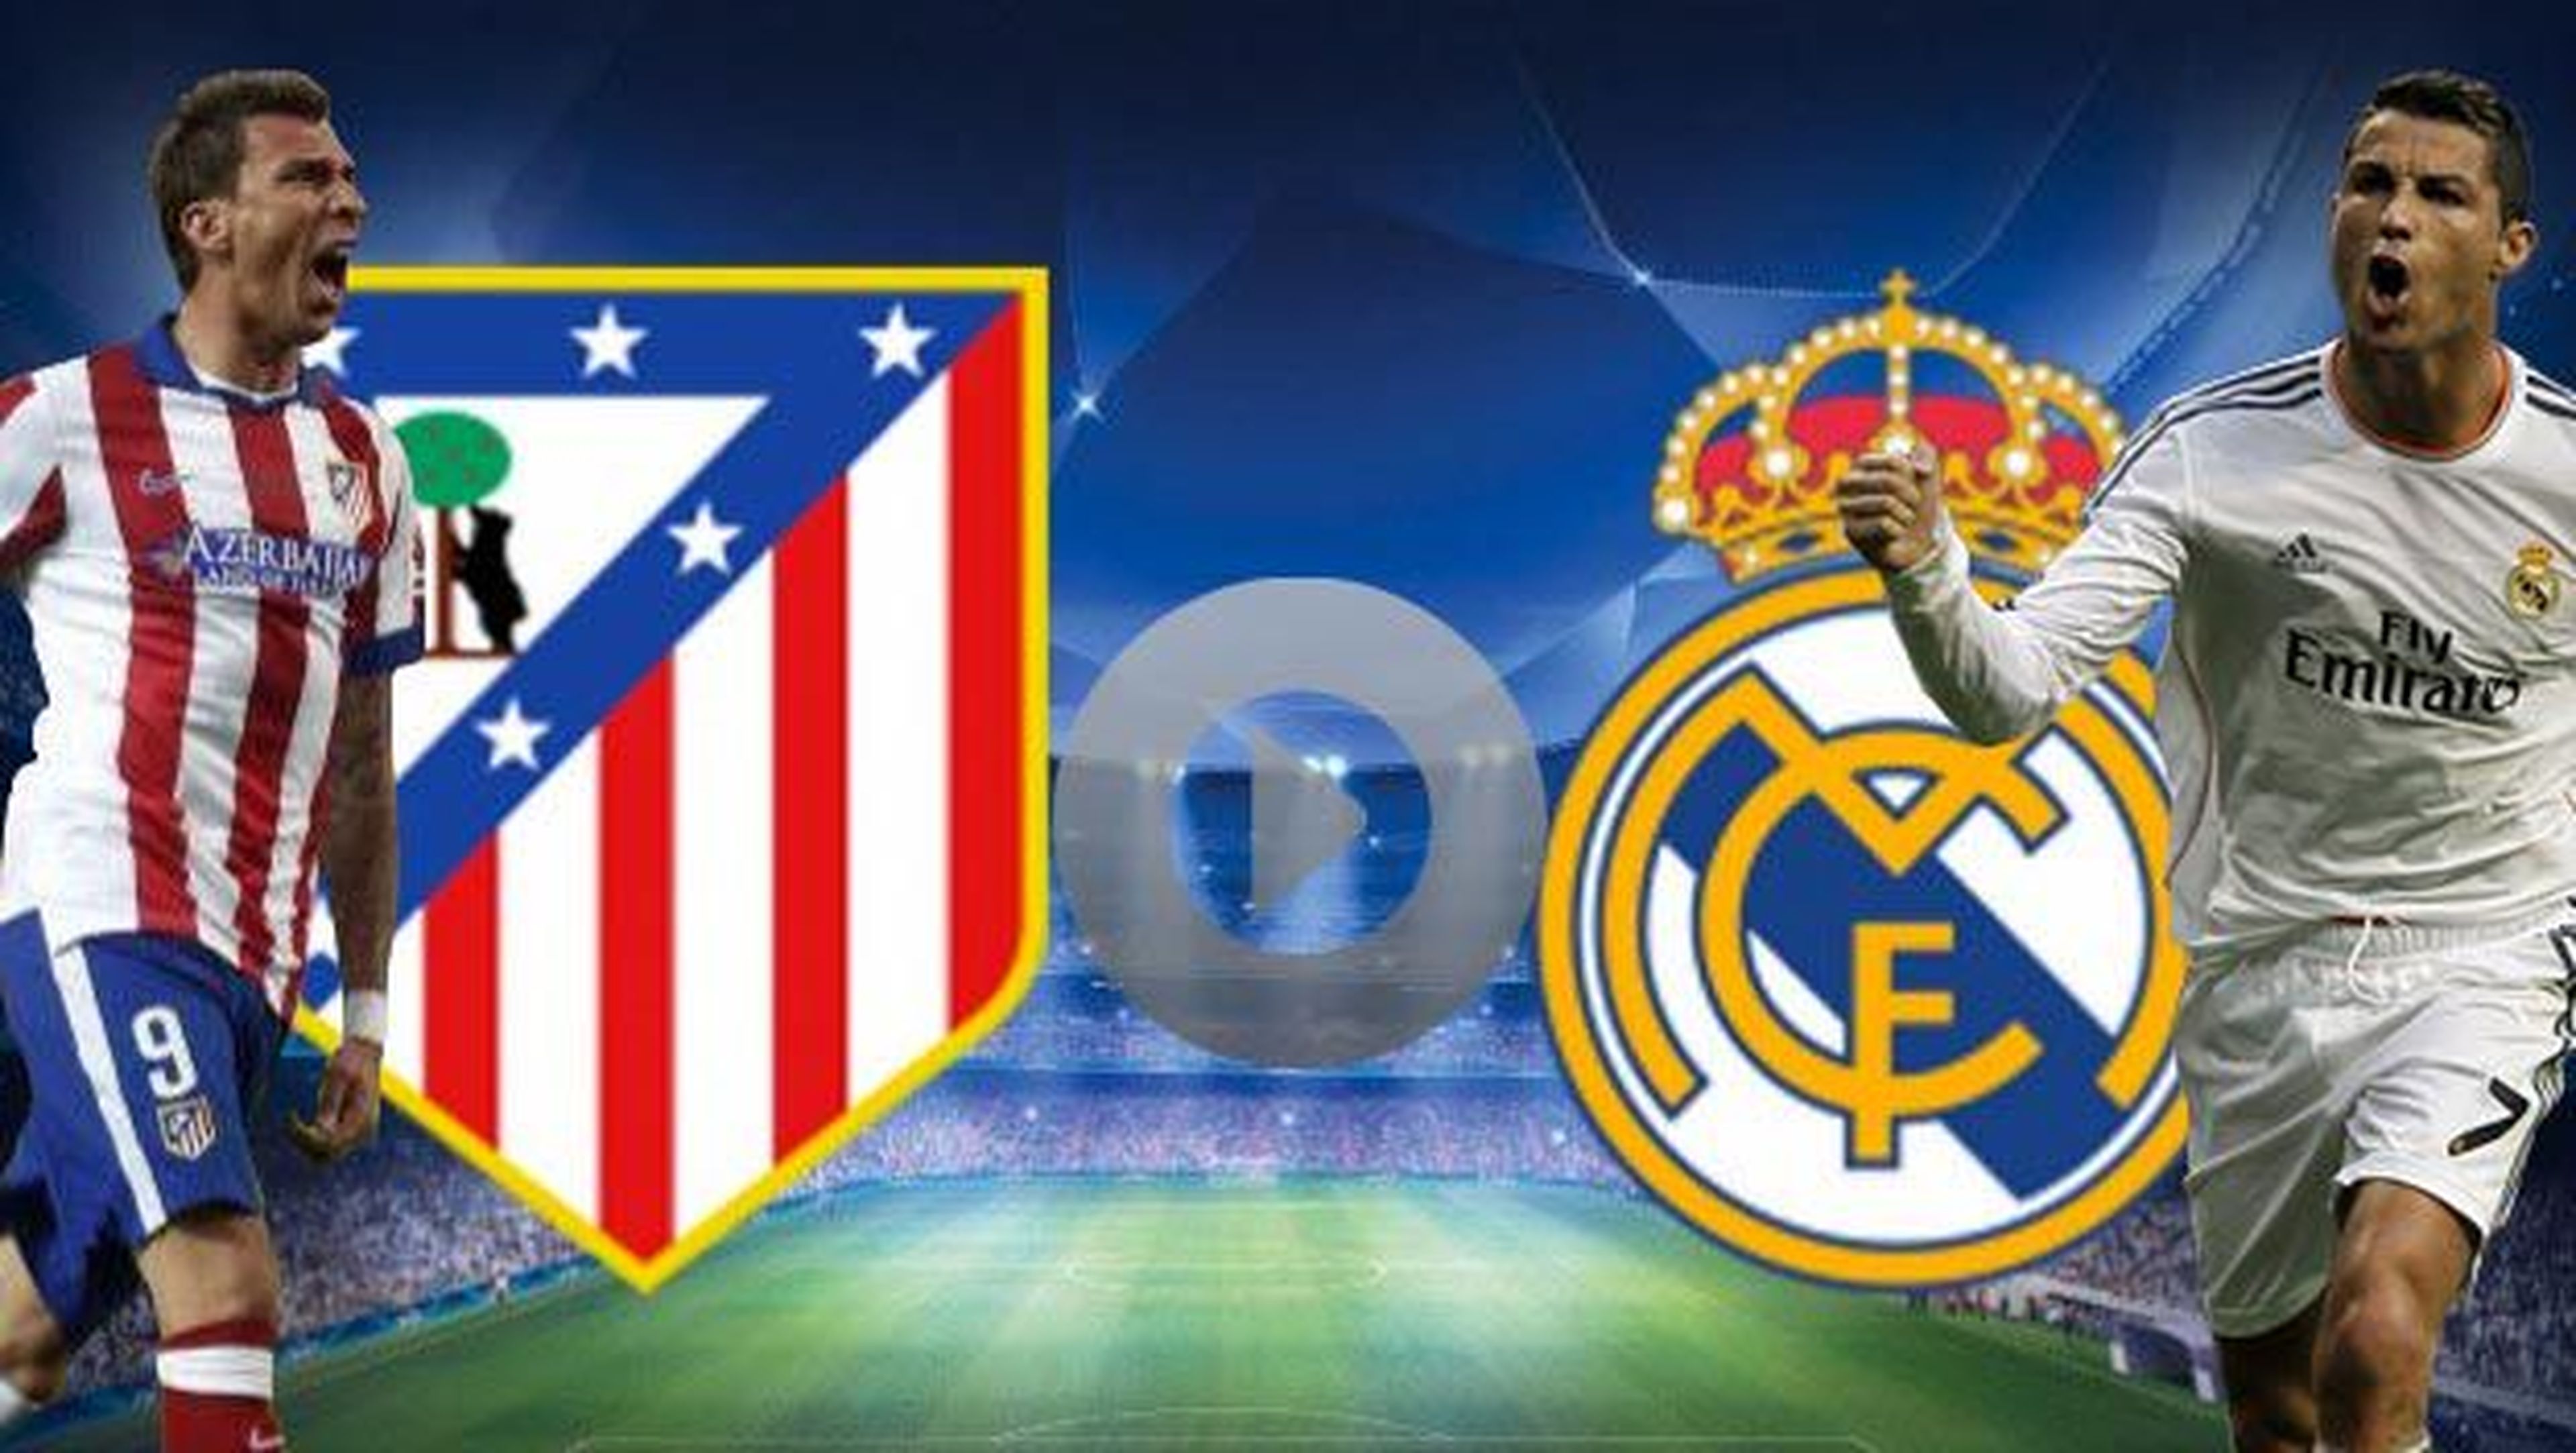 Ver online y en directo Atlético Madrid vs Real Madrid de Champions